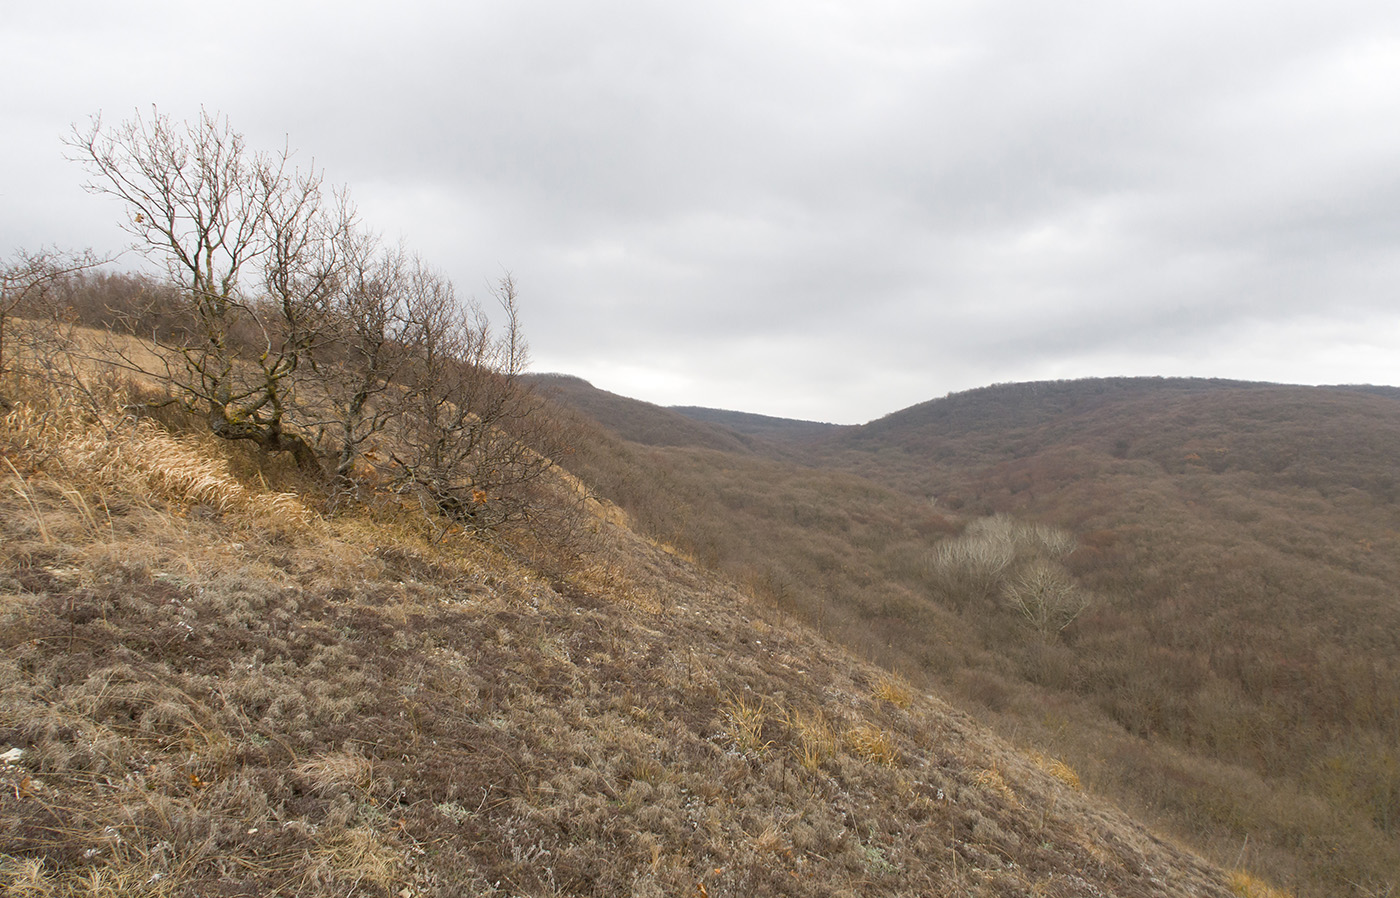 Олешкова щель, image of landscape/habitat.